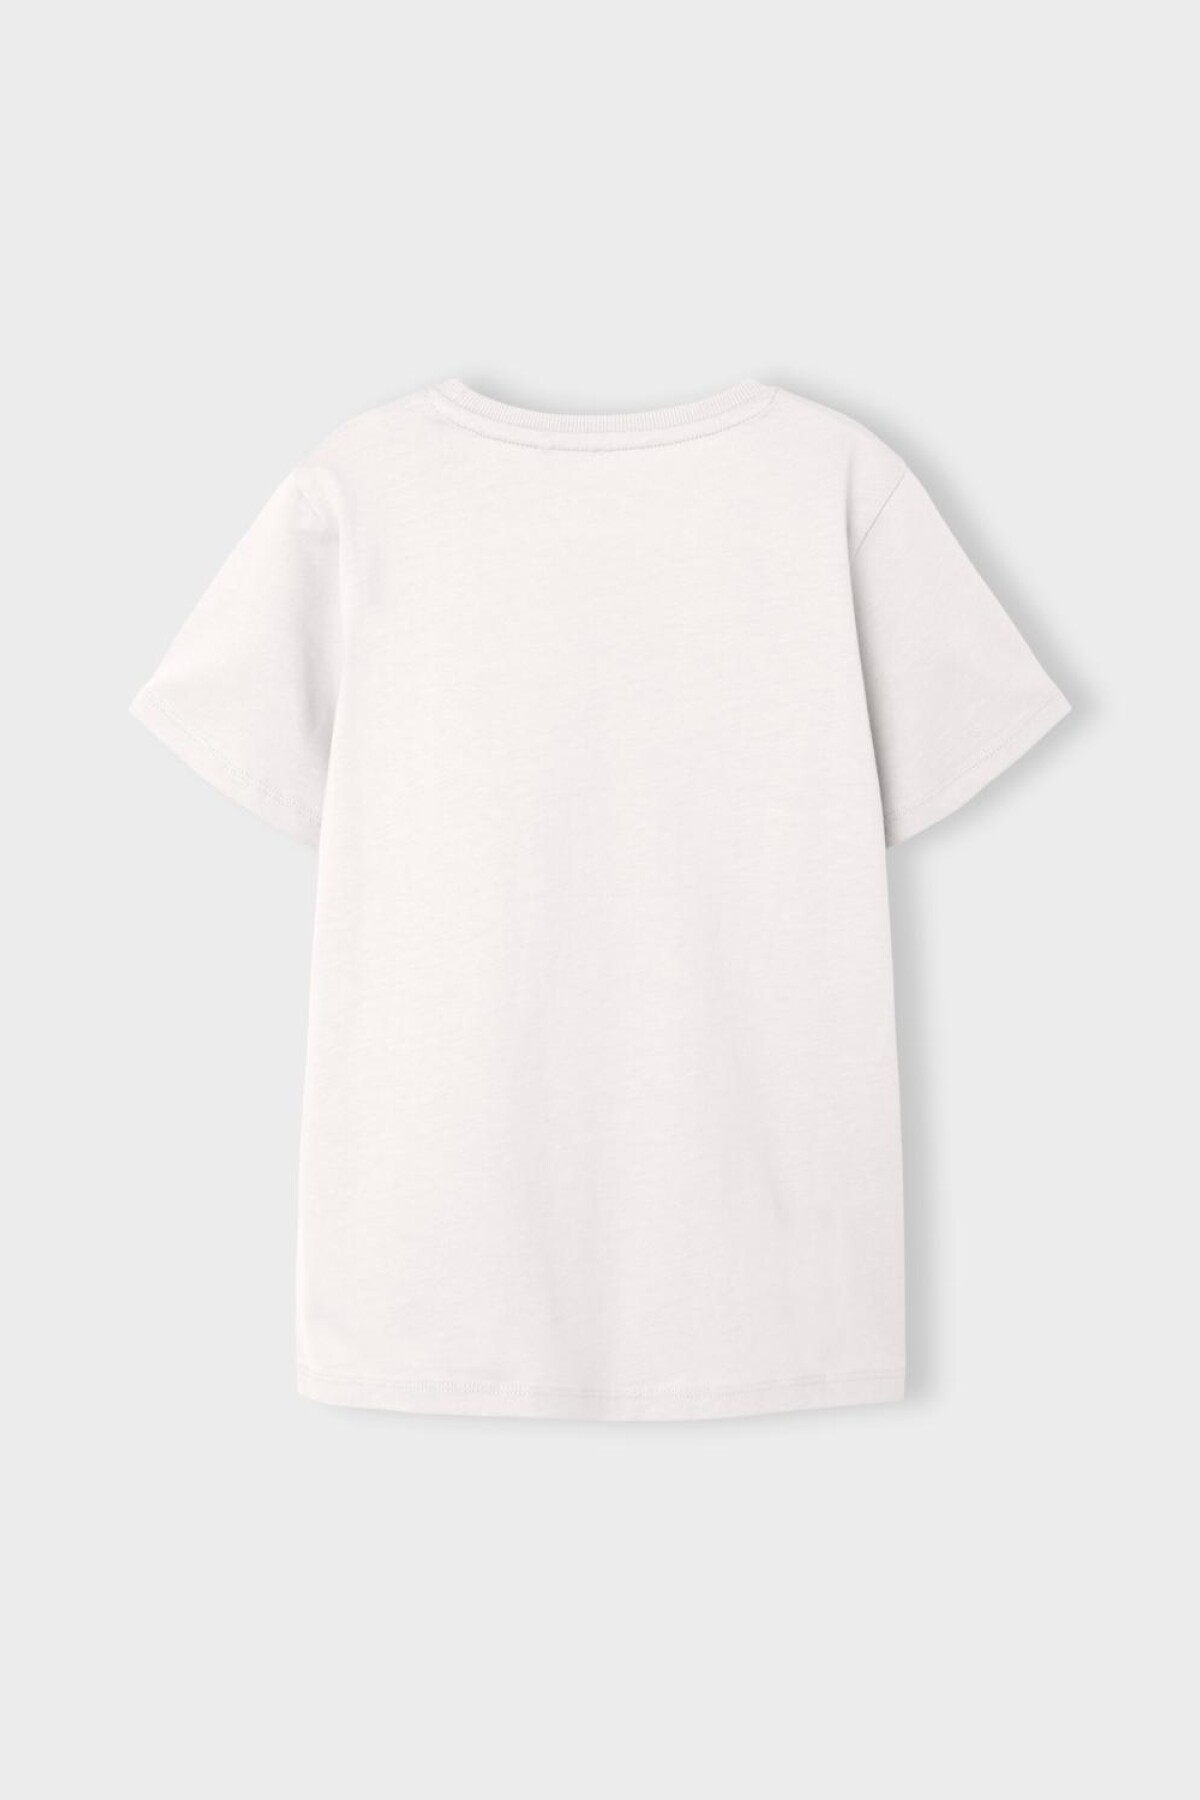 Camiseta Voto White Alyssum